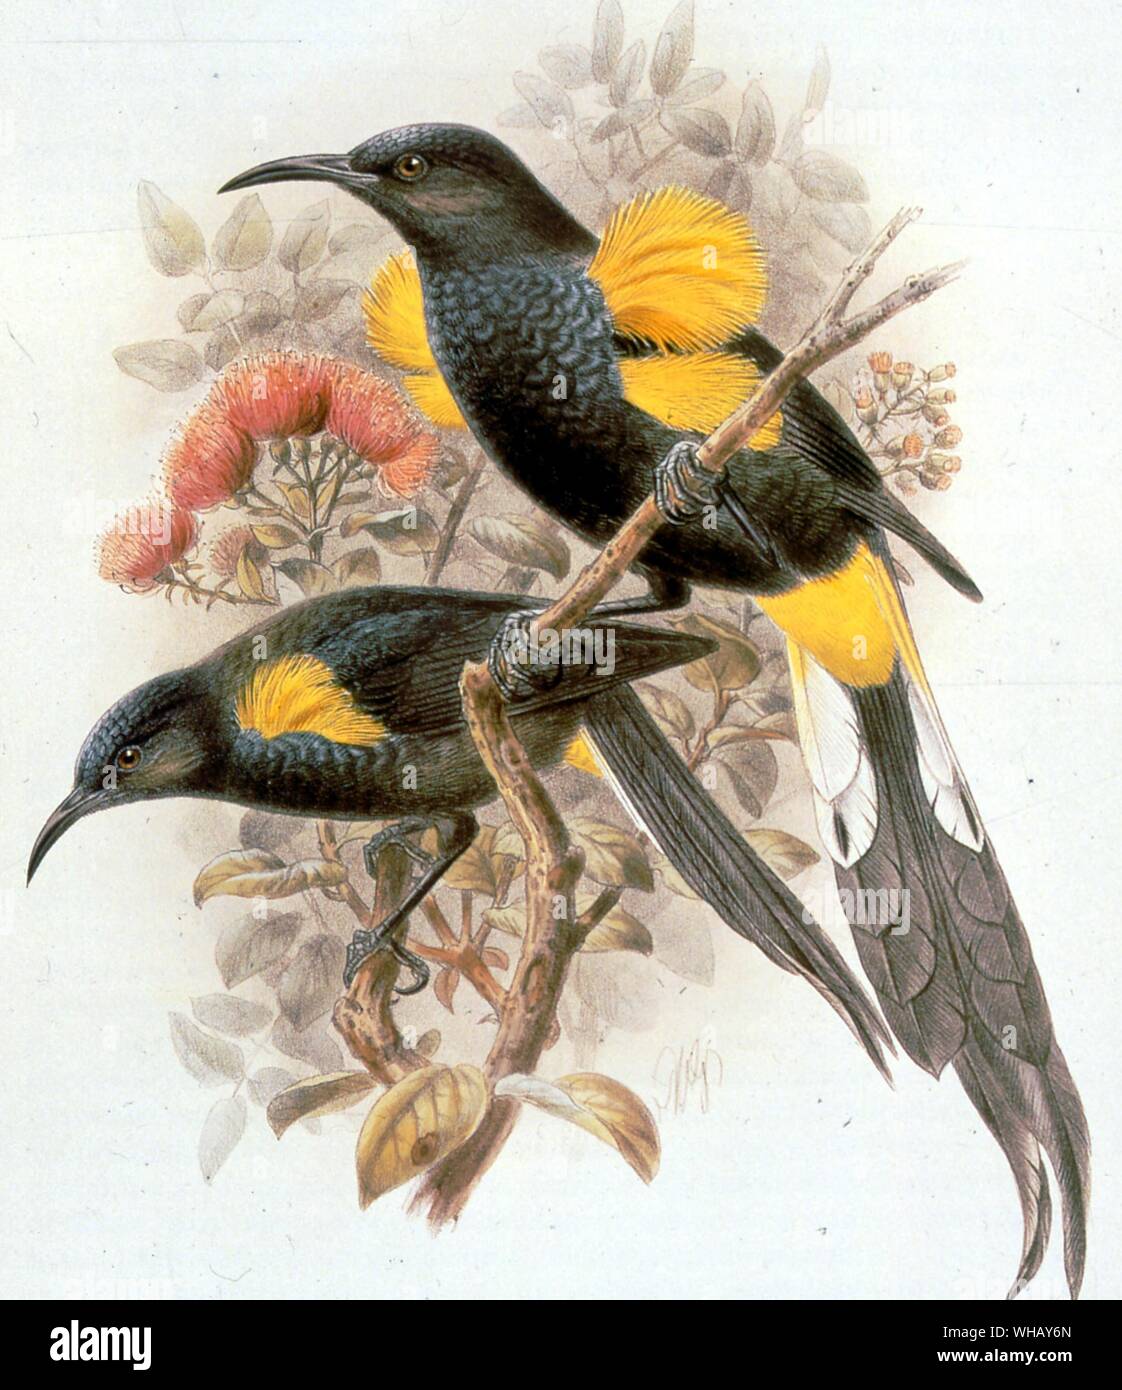 Georgia O'os. Ausgestorbenen Vögel Frontpiece. Ausgestorbenen Vögel von Errol Fuller. Eine Studie der kürzlich ausgestorbene Vogelarten der Welt mit Farbe und schwarz-weiß Abbildungen. Stockfoto